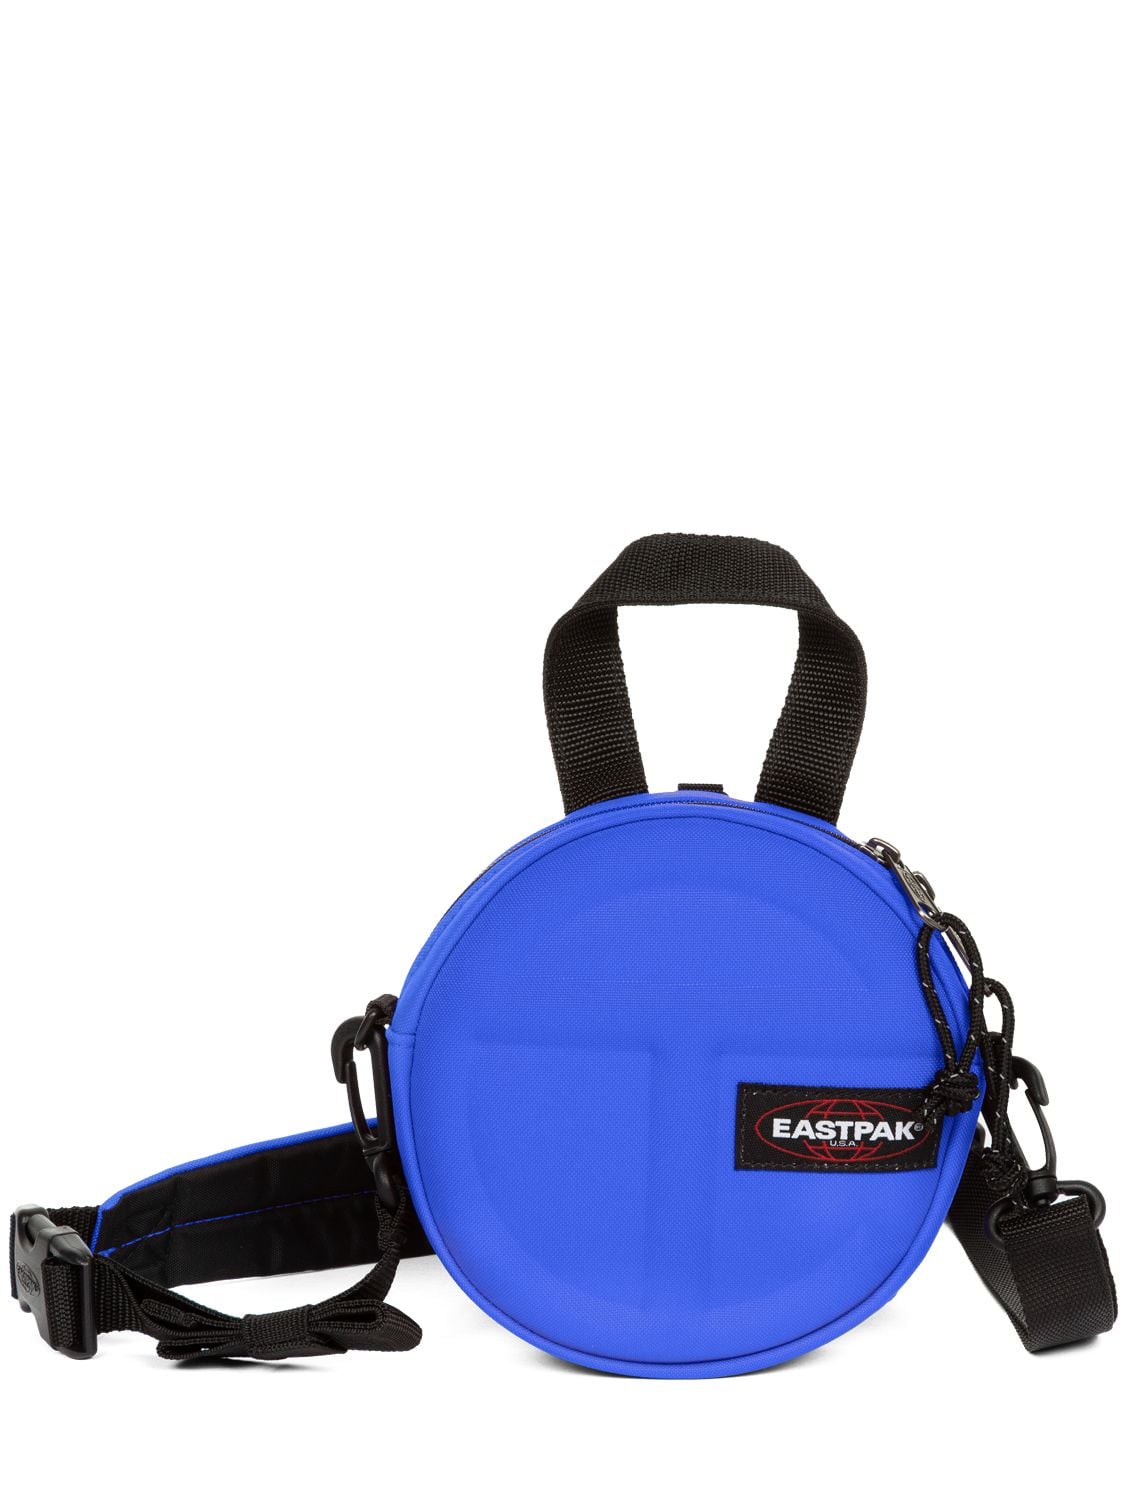 Eastpak X Telfar Circle Bag In Blue